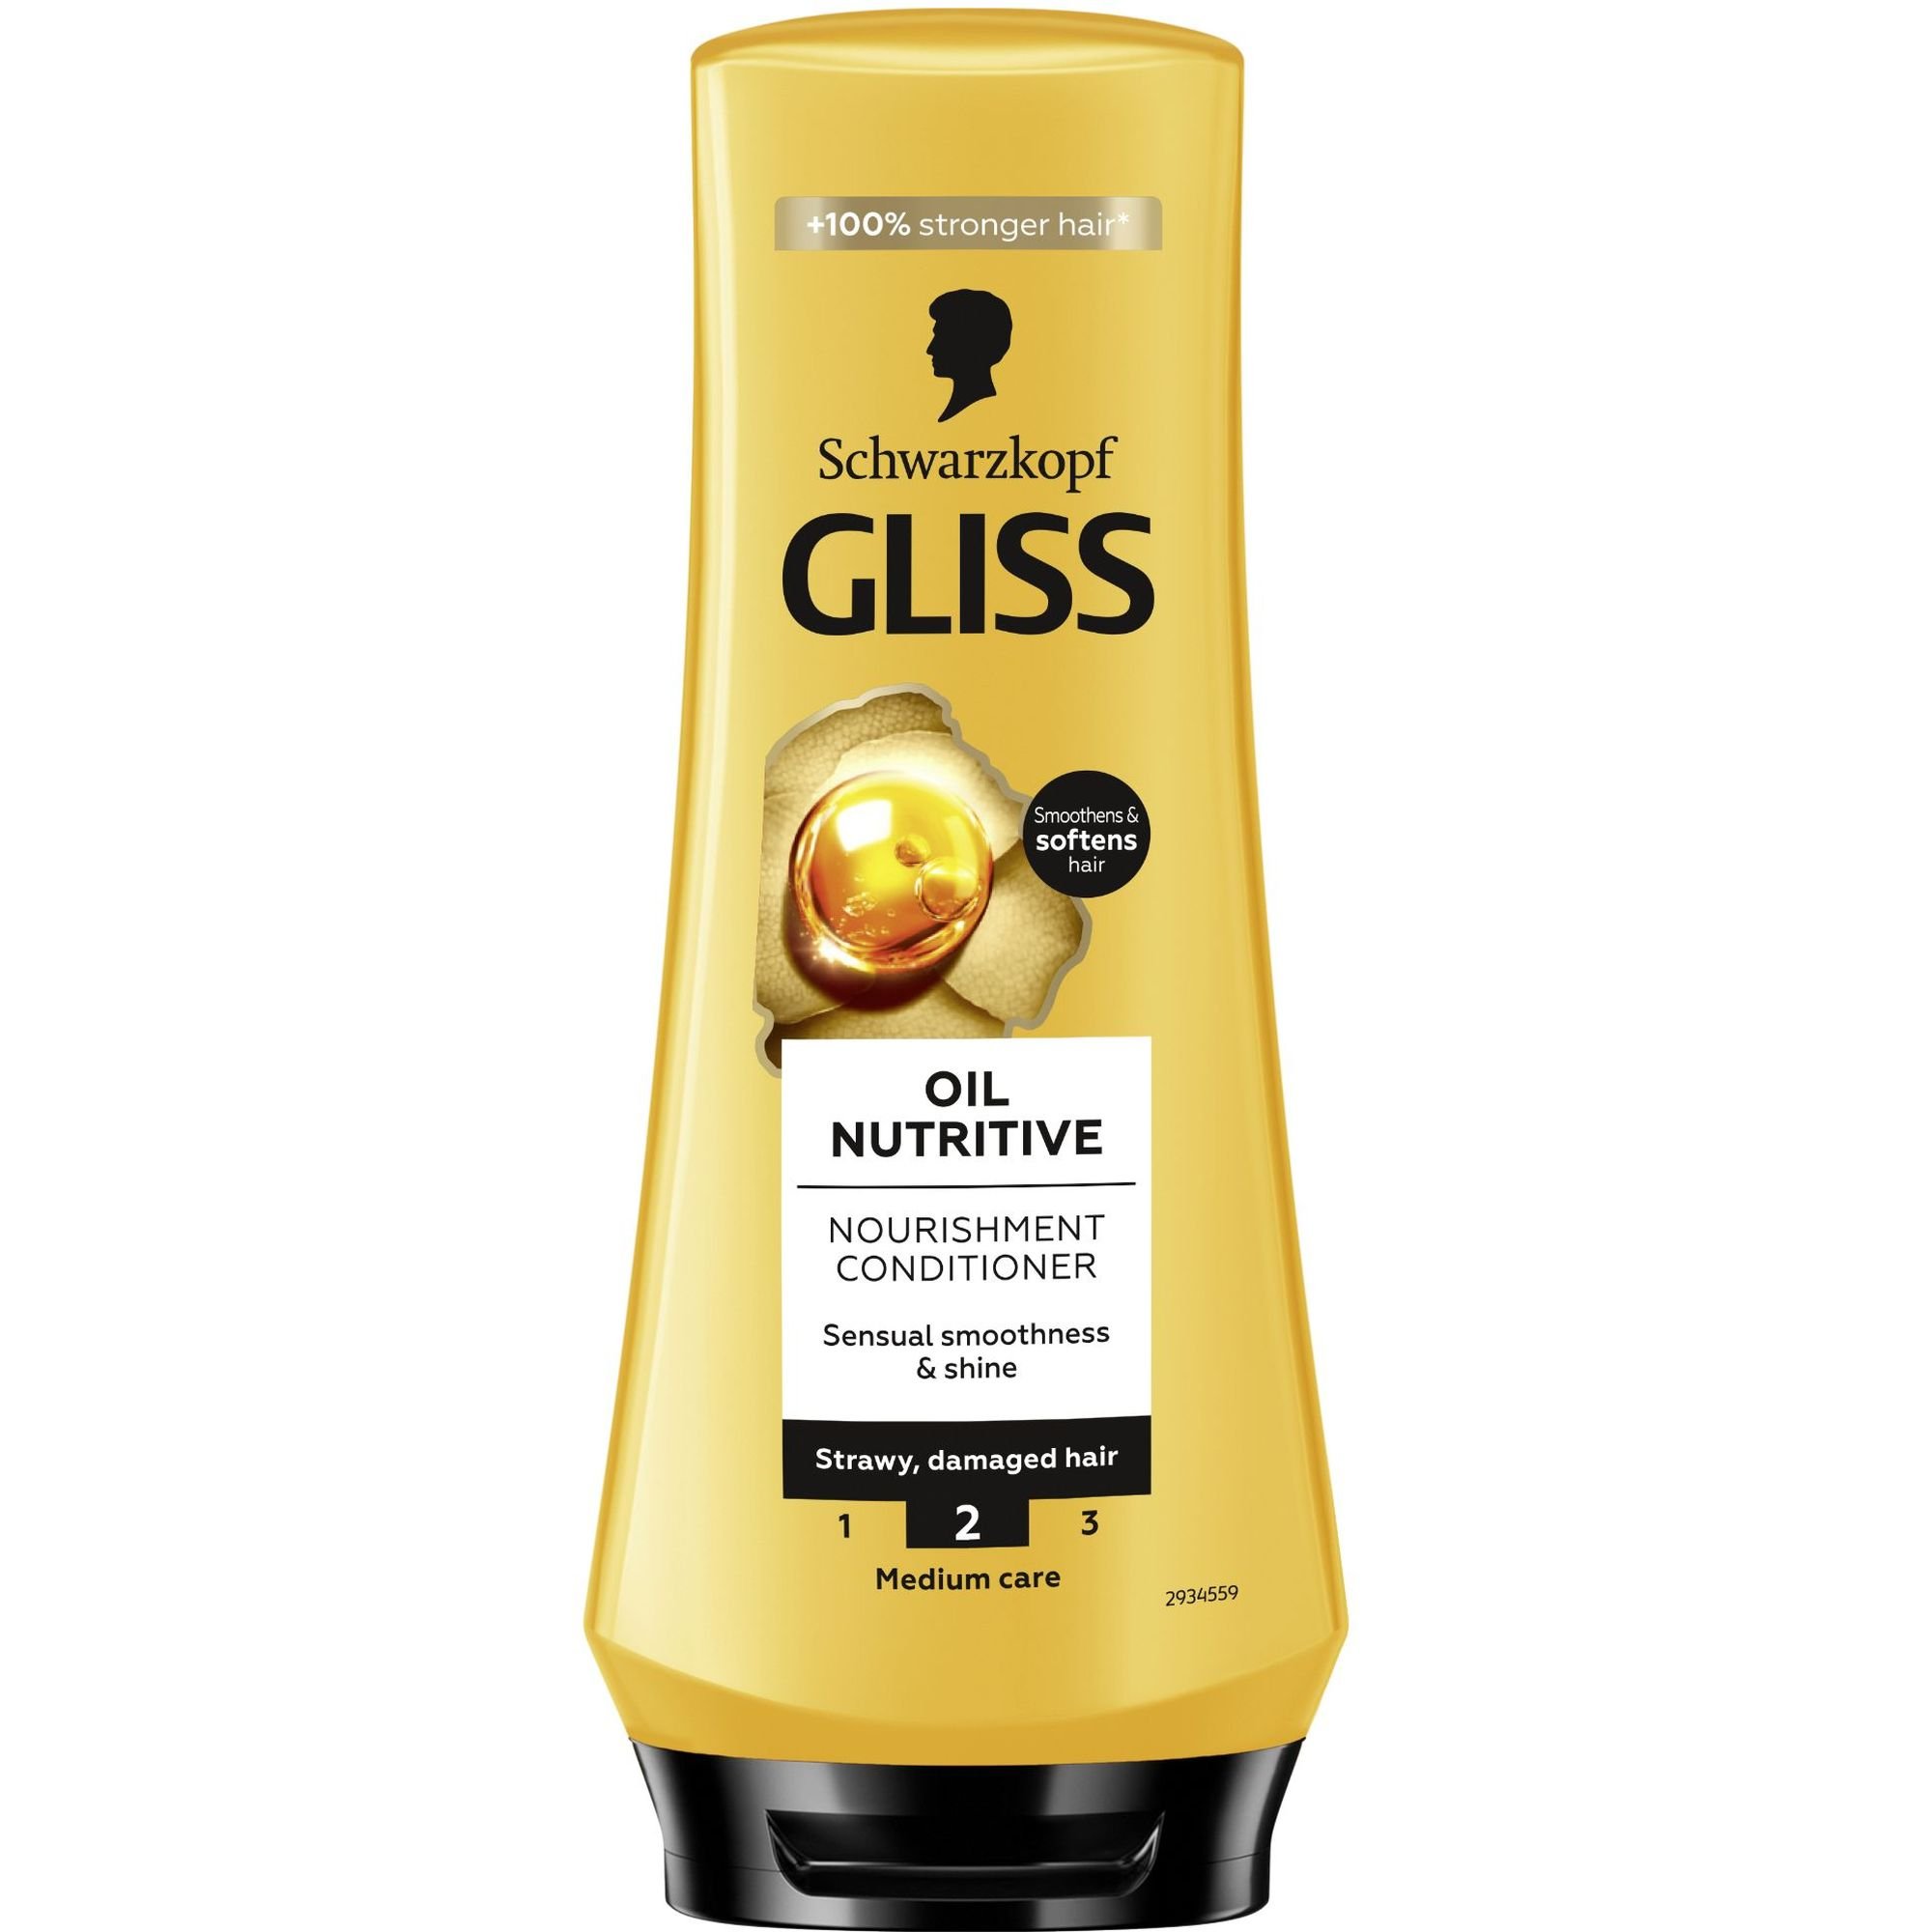 Бальзам Gliss Oil Nutritive для сухих и поврежденных волос 200 мл - фото 1